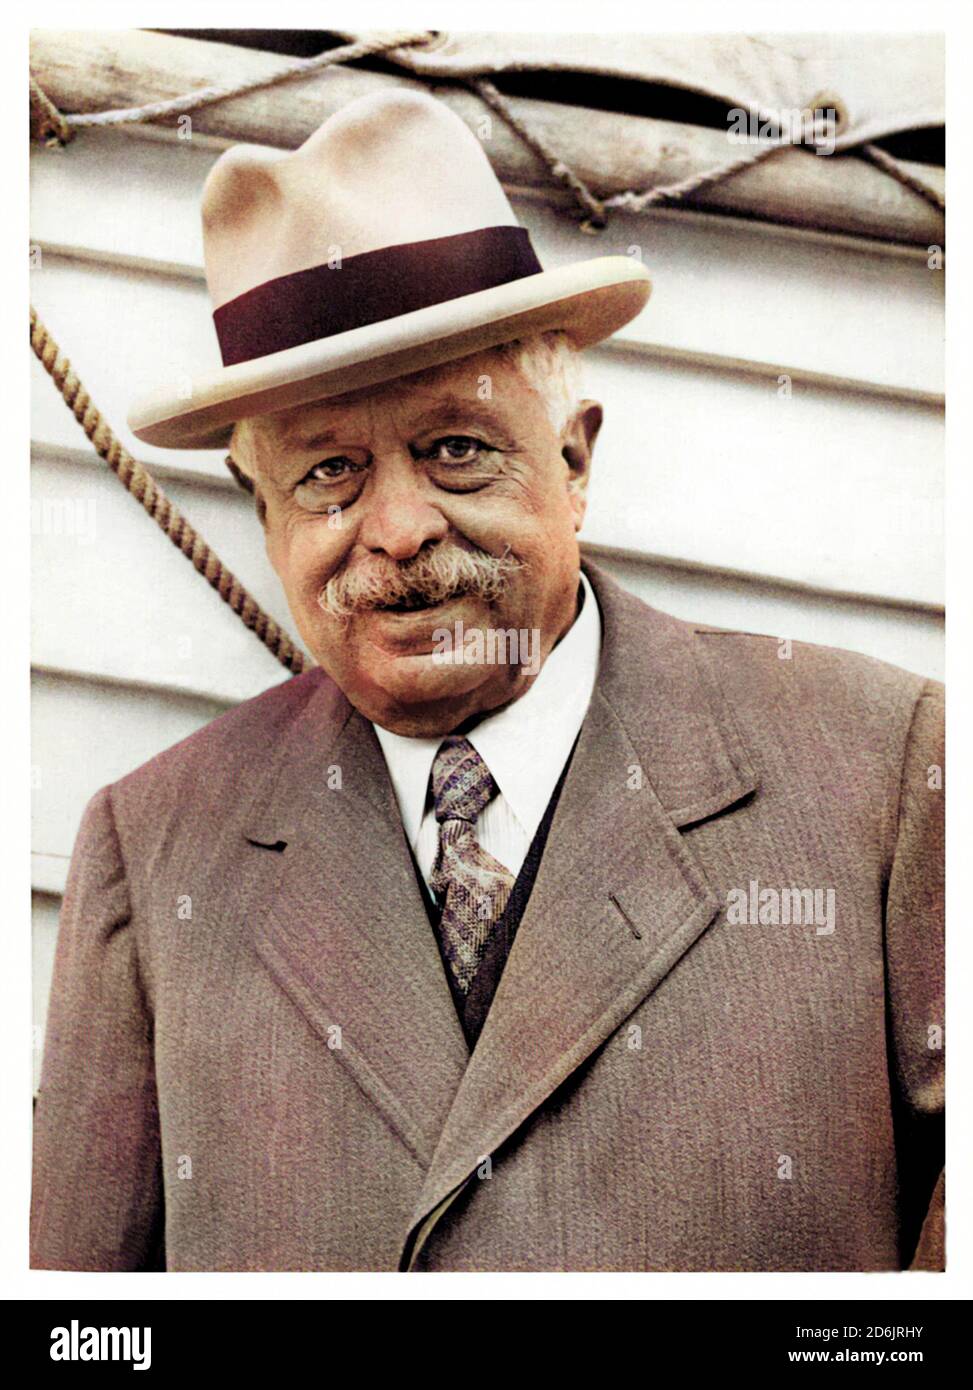 1934 c., NEW YORK, USA : der italienische Politiker VITTORIO EMANUELE ORLANDO ( 1860 - 1952 ). Unbekannter Fotograf. DIGITAL EINGEFÄRBT . - POLITIK - POLITIK - POLITIK - foto storiche - foto storica - Portrait - ritratto - baffi - Schnurrbart - uomo anziano vecchio - alter Mann - Krawatte - Cravatta - Hut - cappello - Primo Ministro - PRESIDENTE DEL CONSIGLIO - SECONDA GUERRA MONDIALE - WOLD WAR II - Grande Guerra - RESISTENZA - LIBERAZIONE dal Nazifascismo --- ARCHIVIO GBB Stockfoto